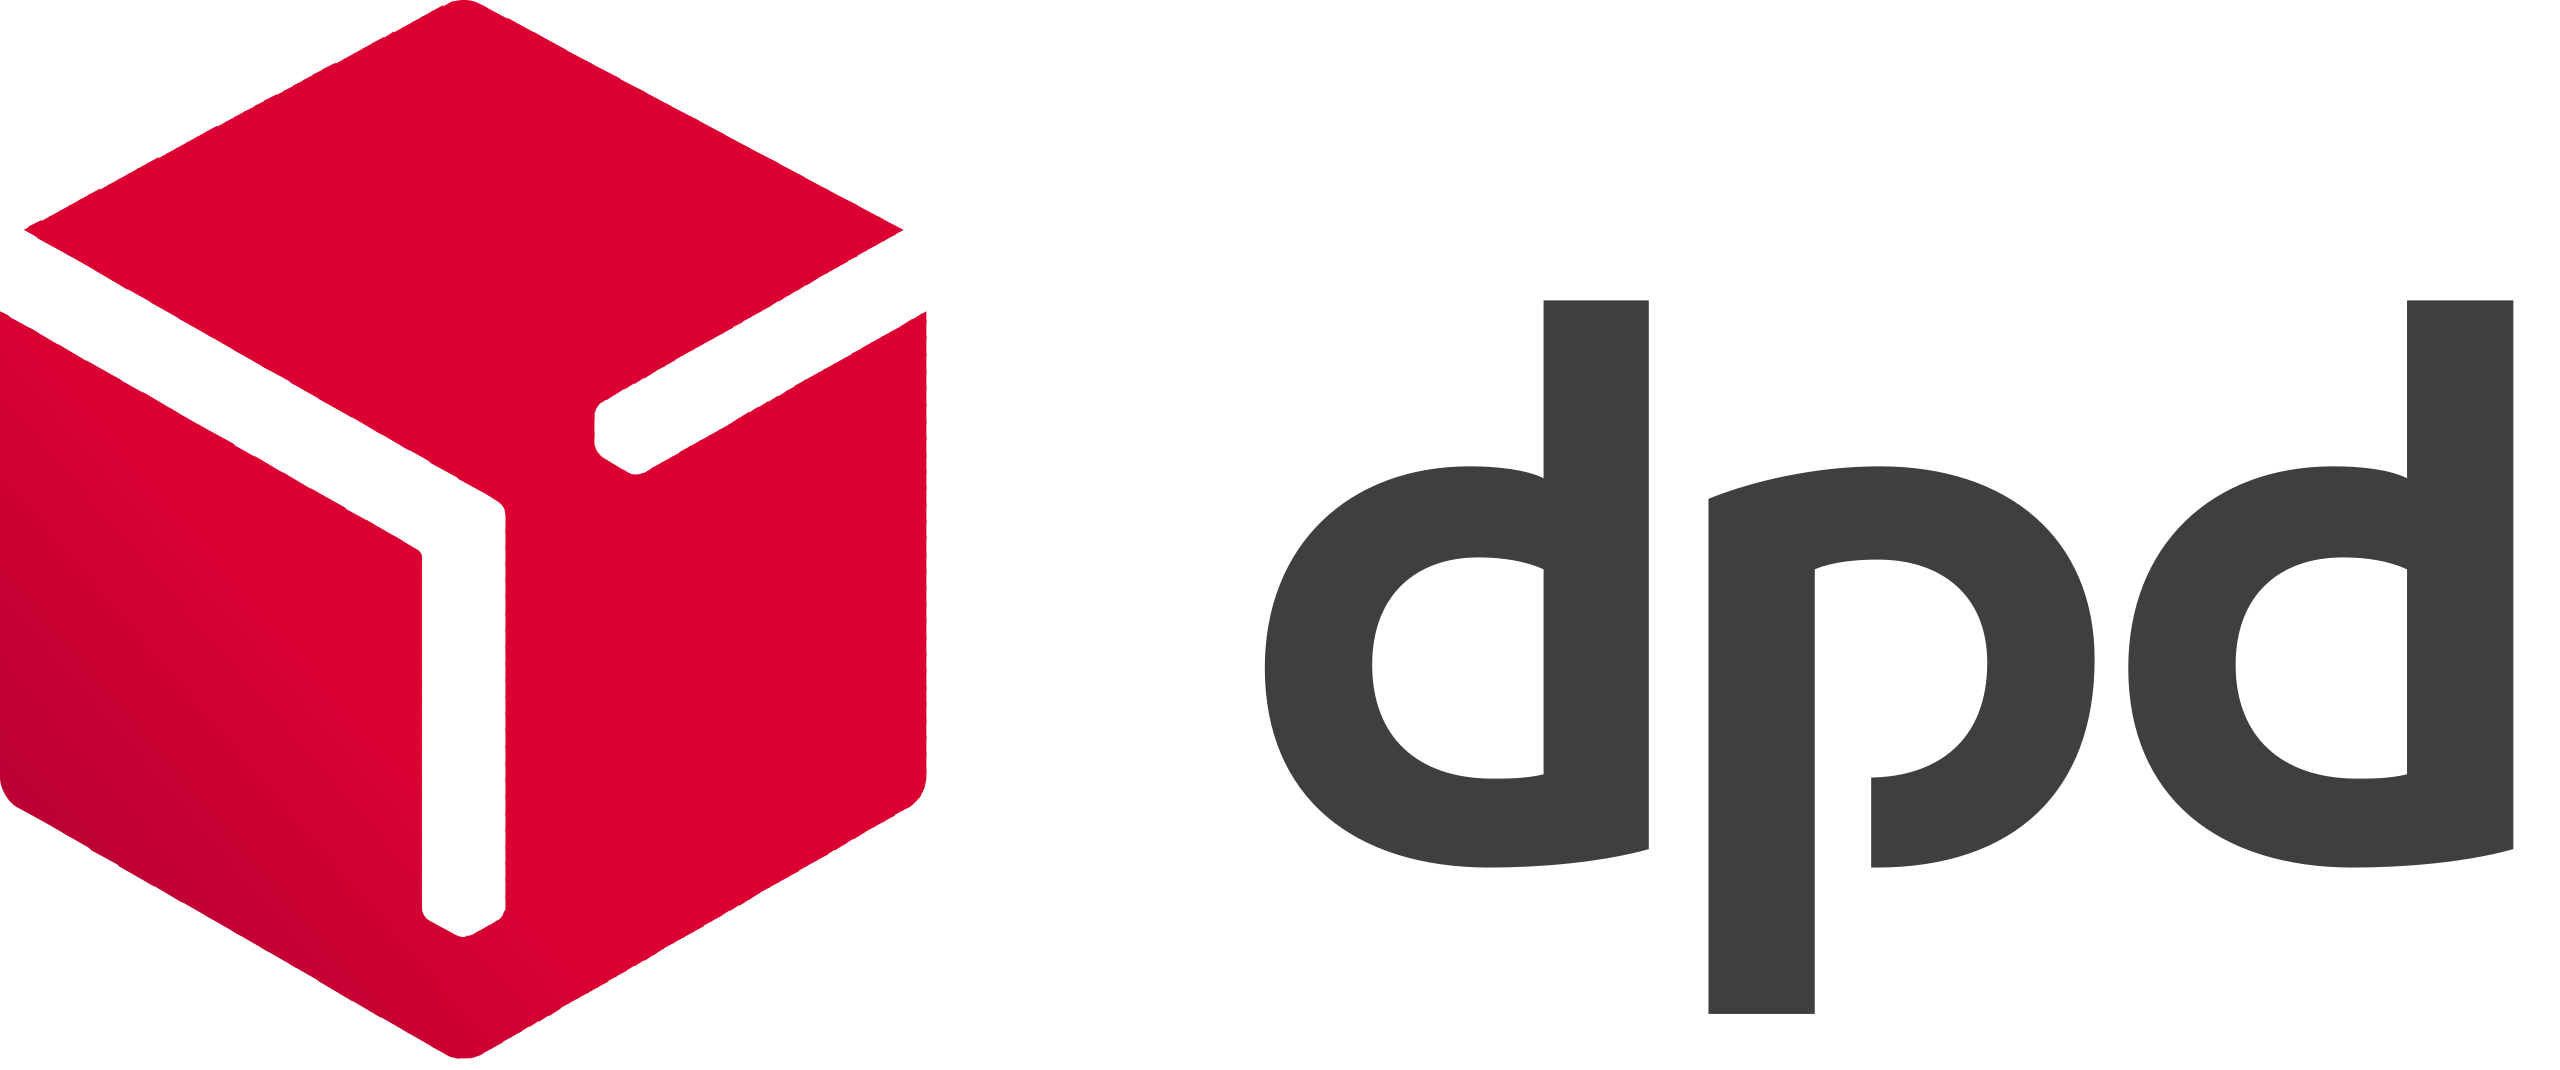 DPD thuisbezorging - DE